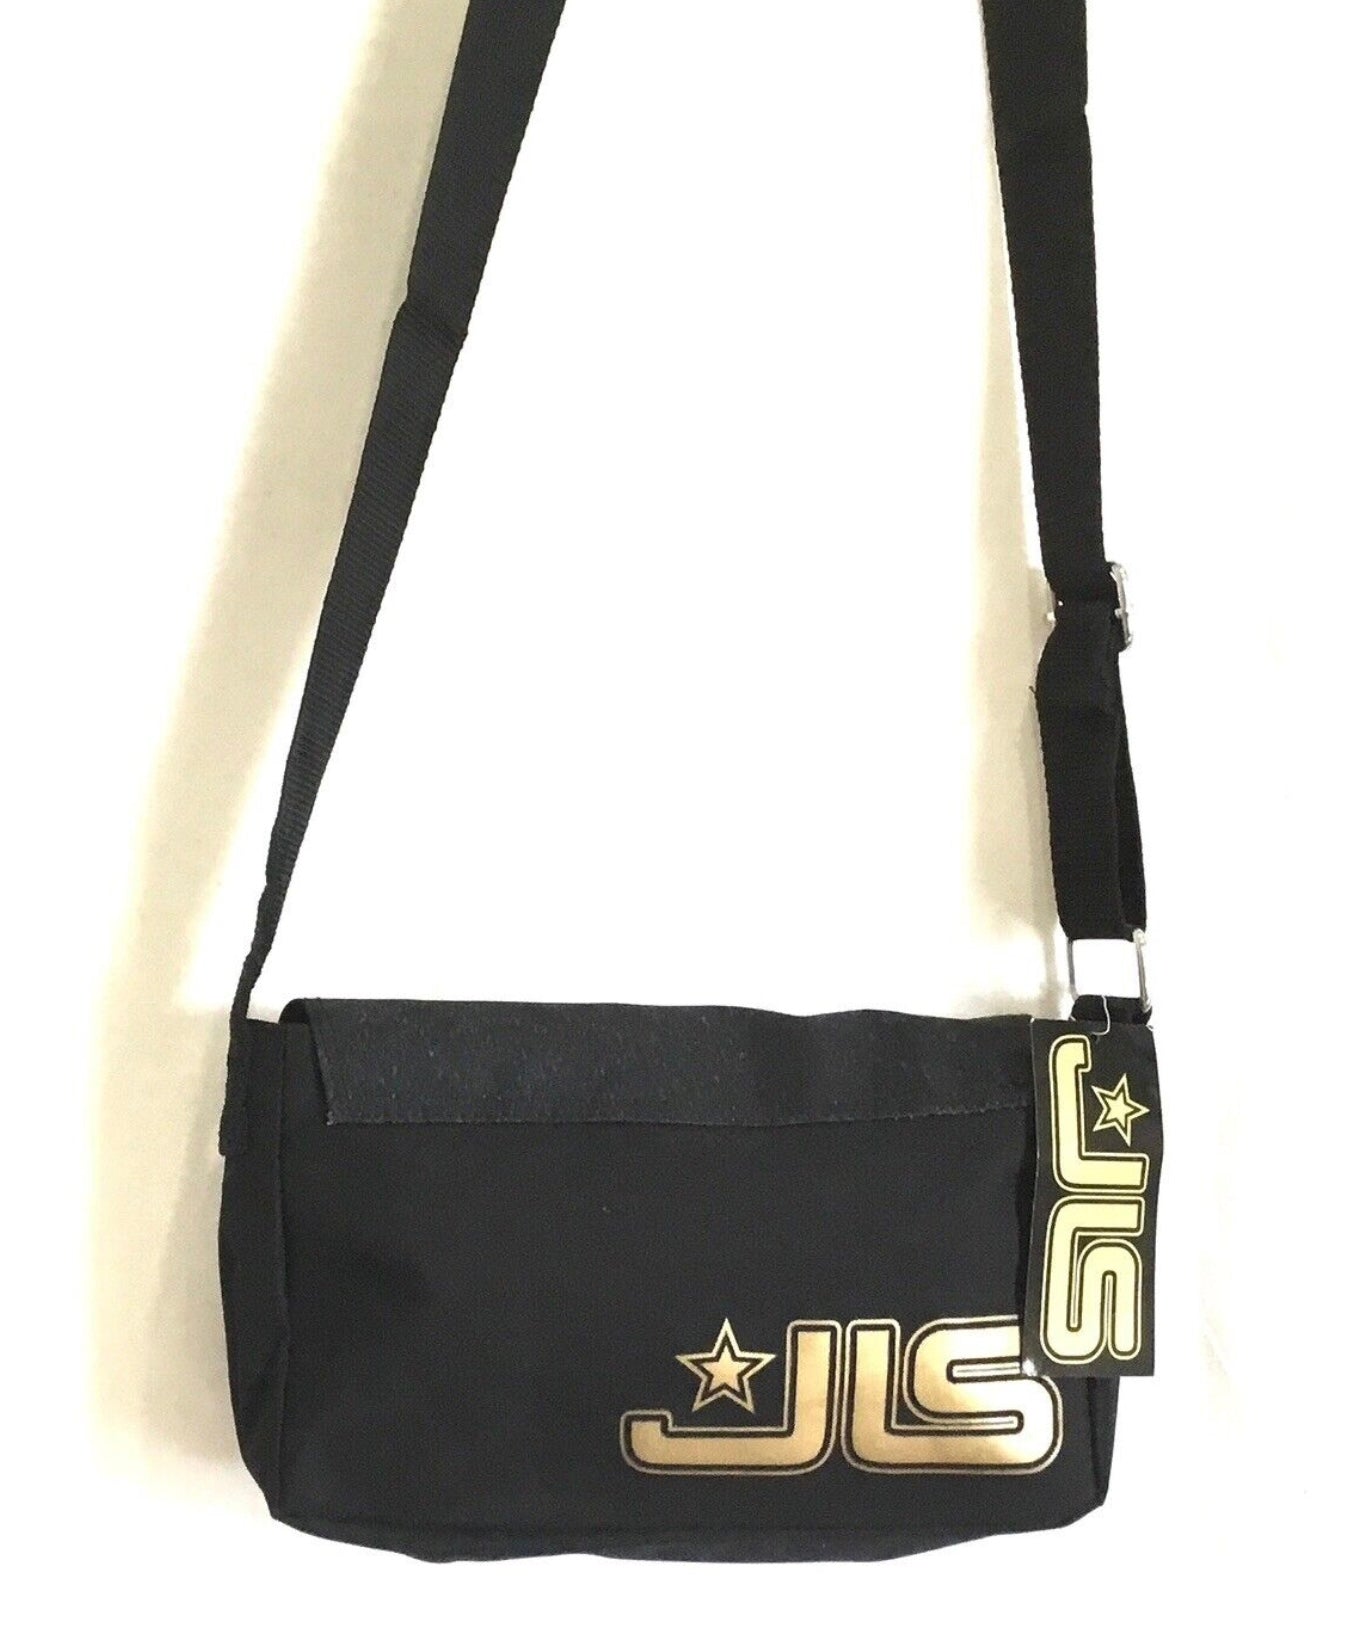 JLS MESSENGER SHOLDER BAG WITH A FREE PENCILS SET